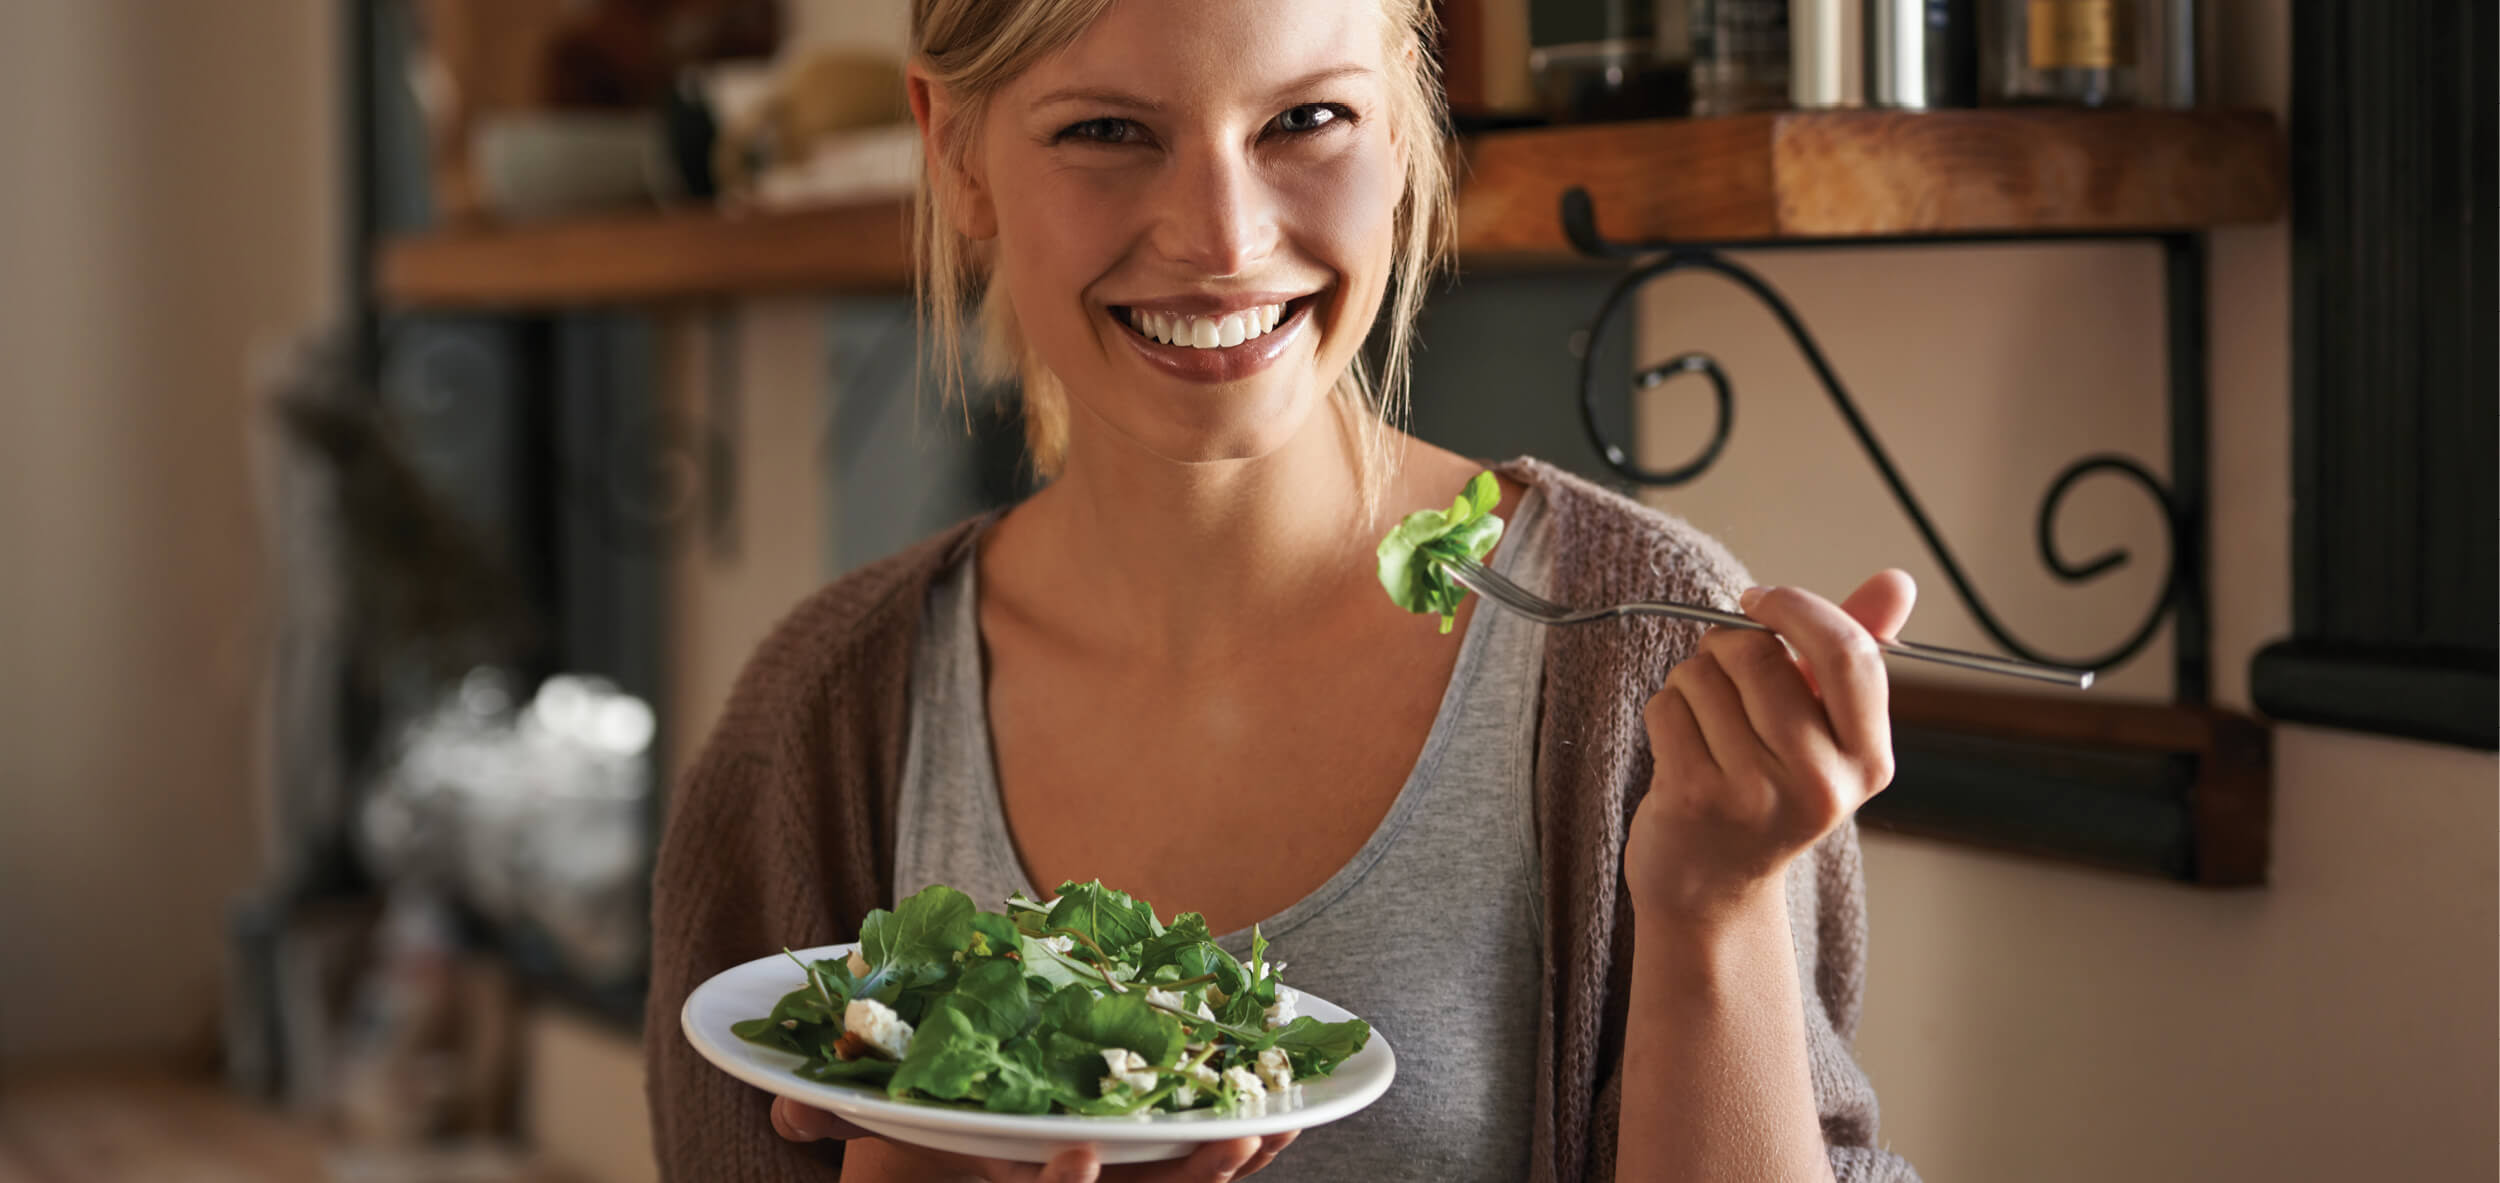 Woman eating salad